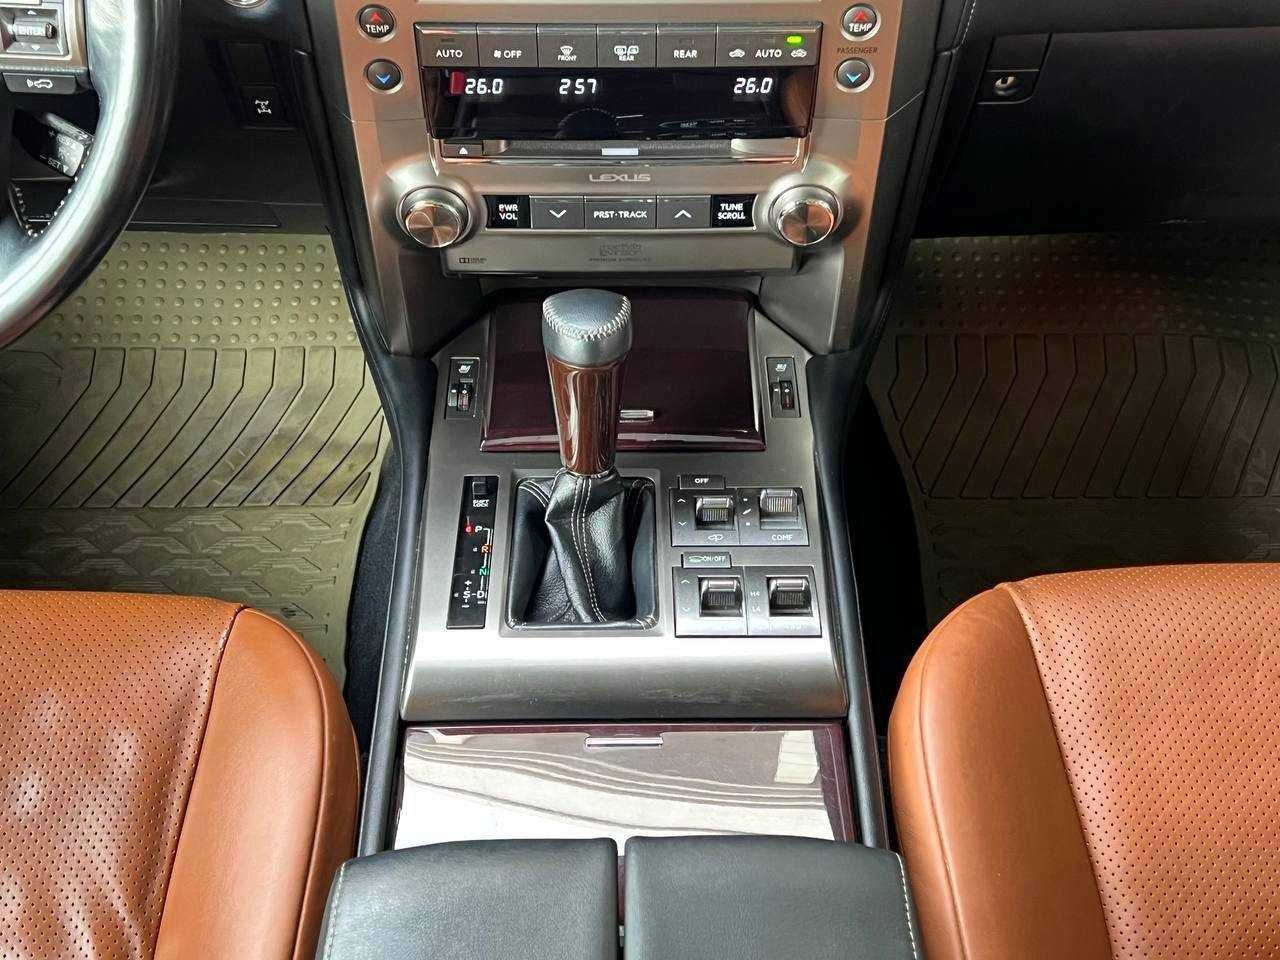 Автомобиль Lexus GX460 возможно приобрести в рассрочку